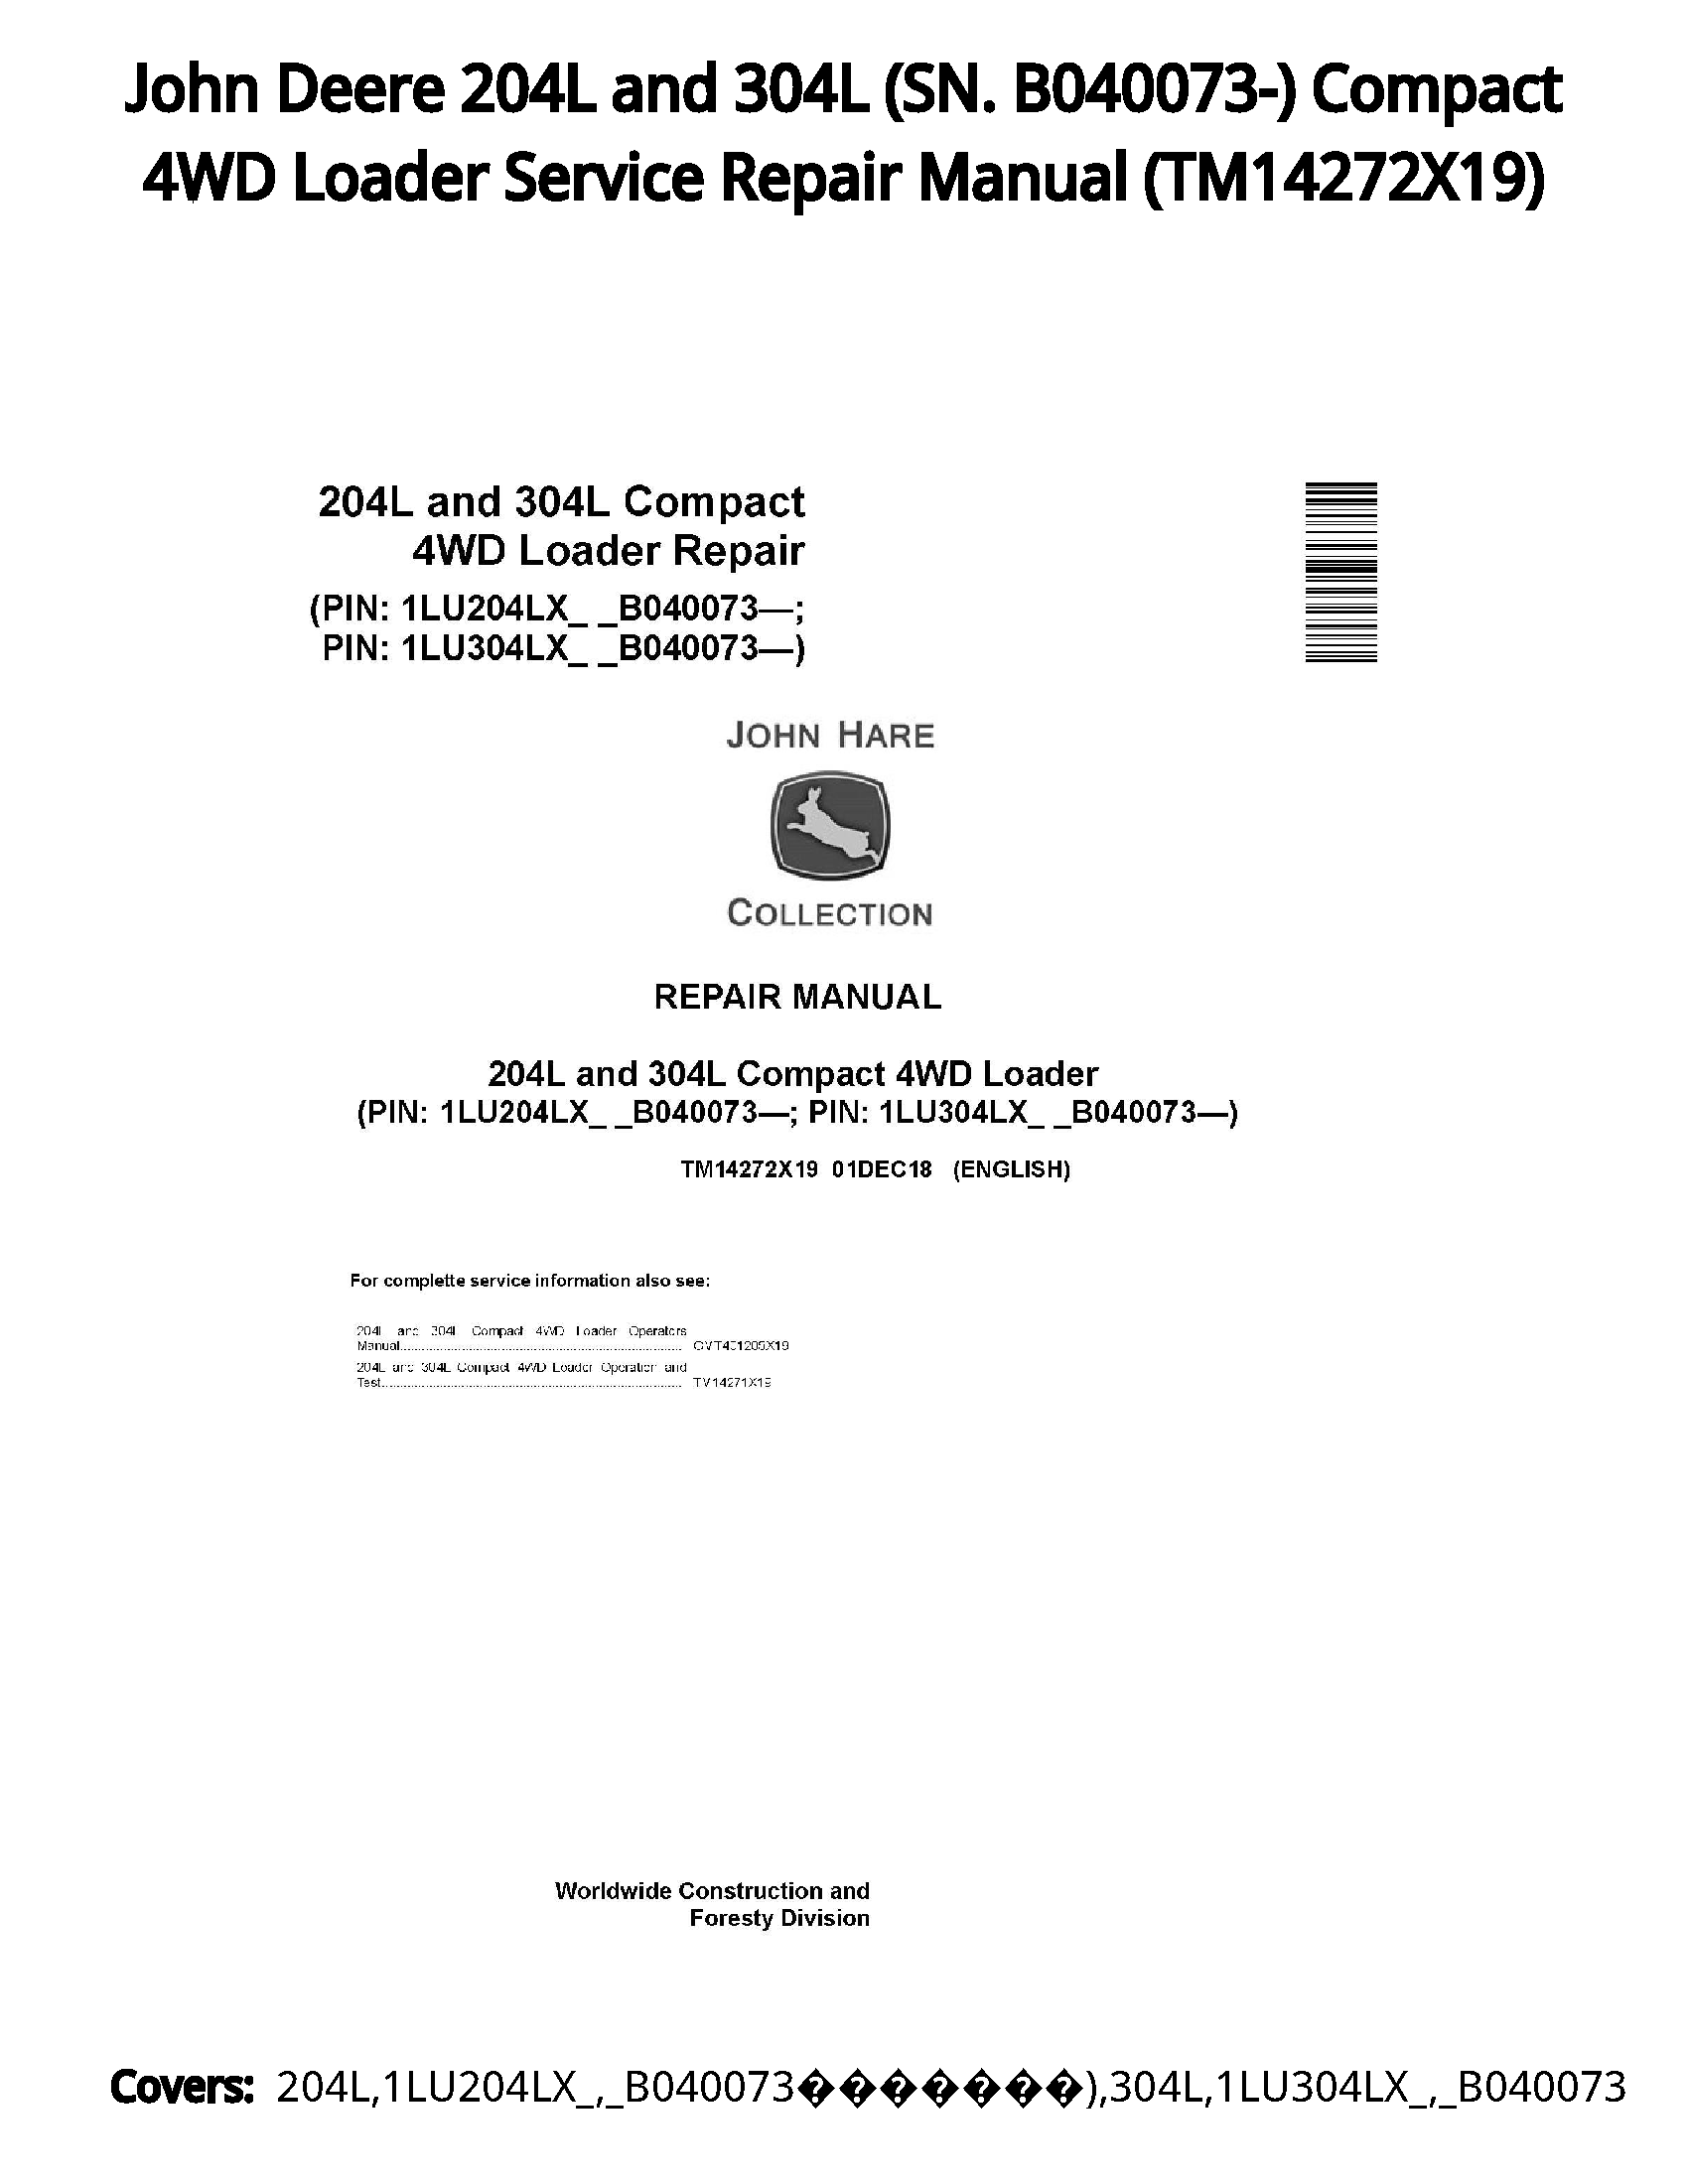 John Deere 204L and 304L (SN. B040073-) Compact 4WD Loader Service Repair Manual - TM14272X19